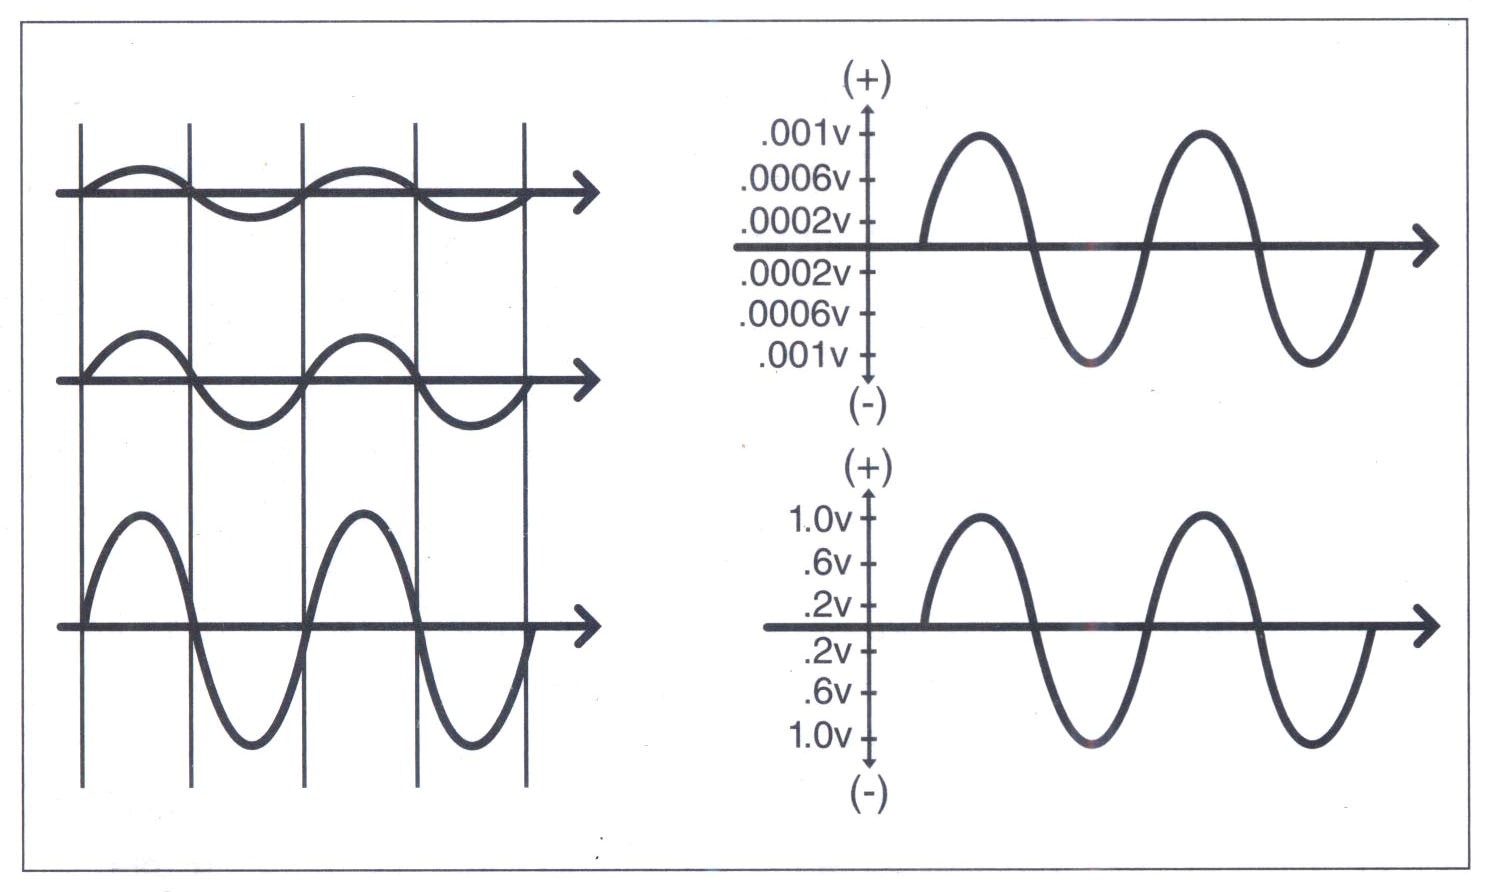 Sóng tương đương với biên độ khác nhau được hiển thị trên trình tự (time line) hay màn hình máy hiện sóng (oscilloscope).